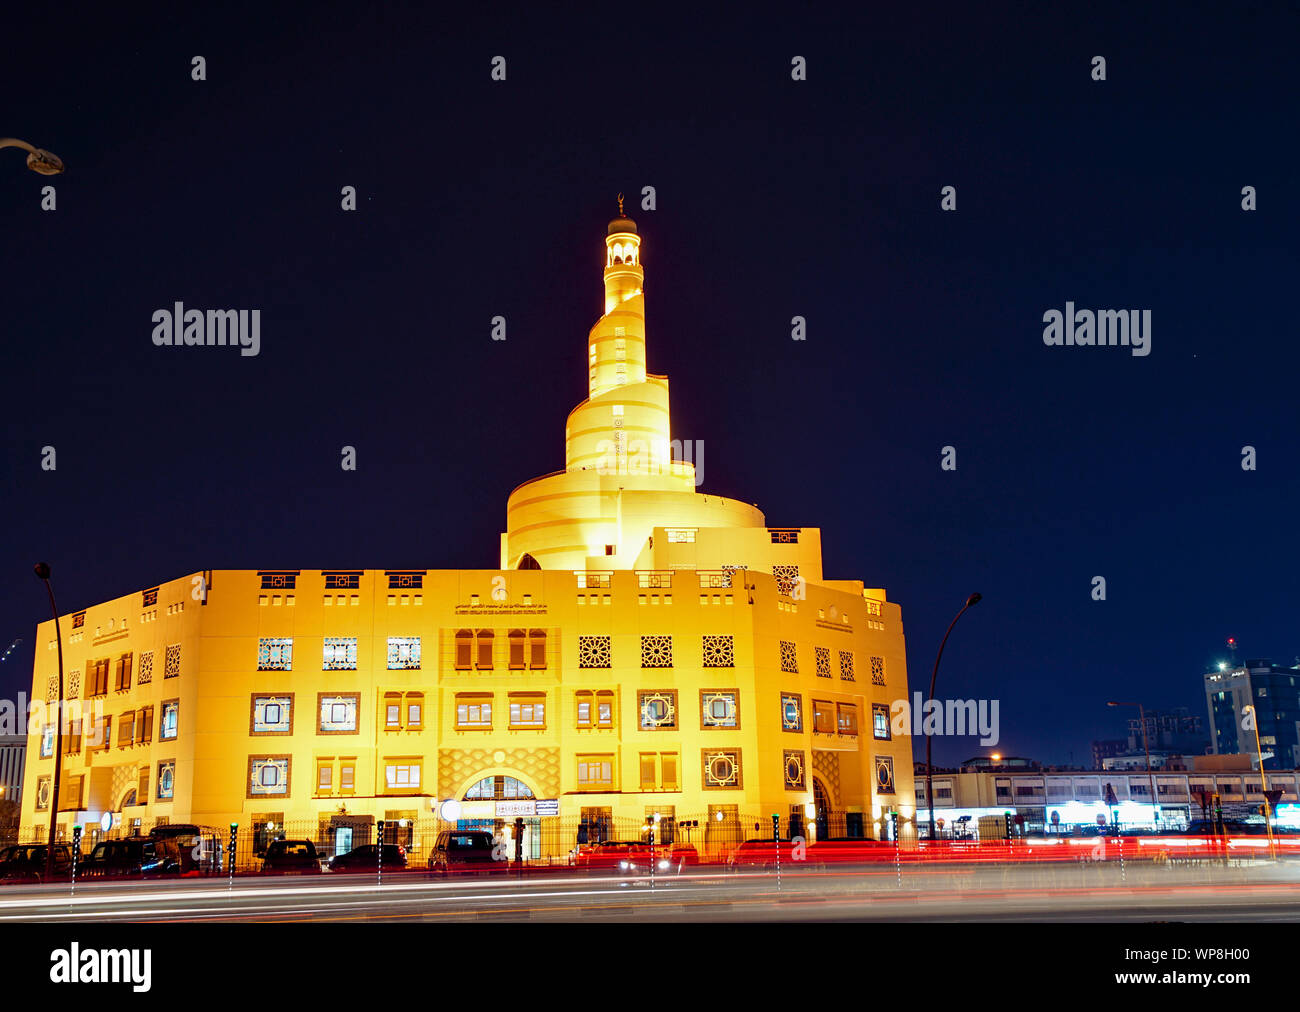 Mosquée Al Fanar, ardent doré avec sa tour minaret en spirale ou à l'encontre de nuit. Doha, Qatar. Banque D'Images